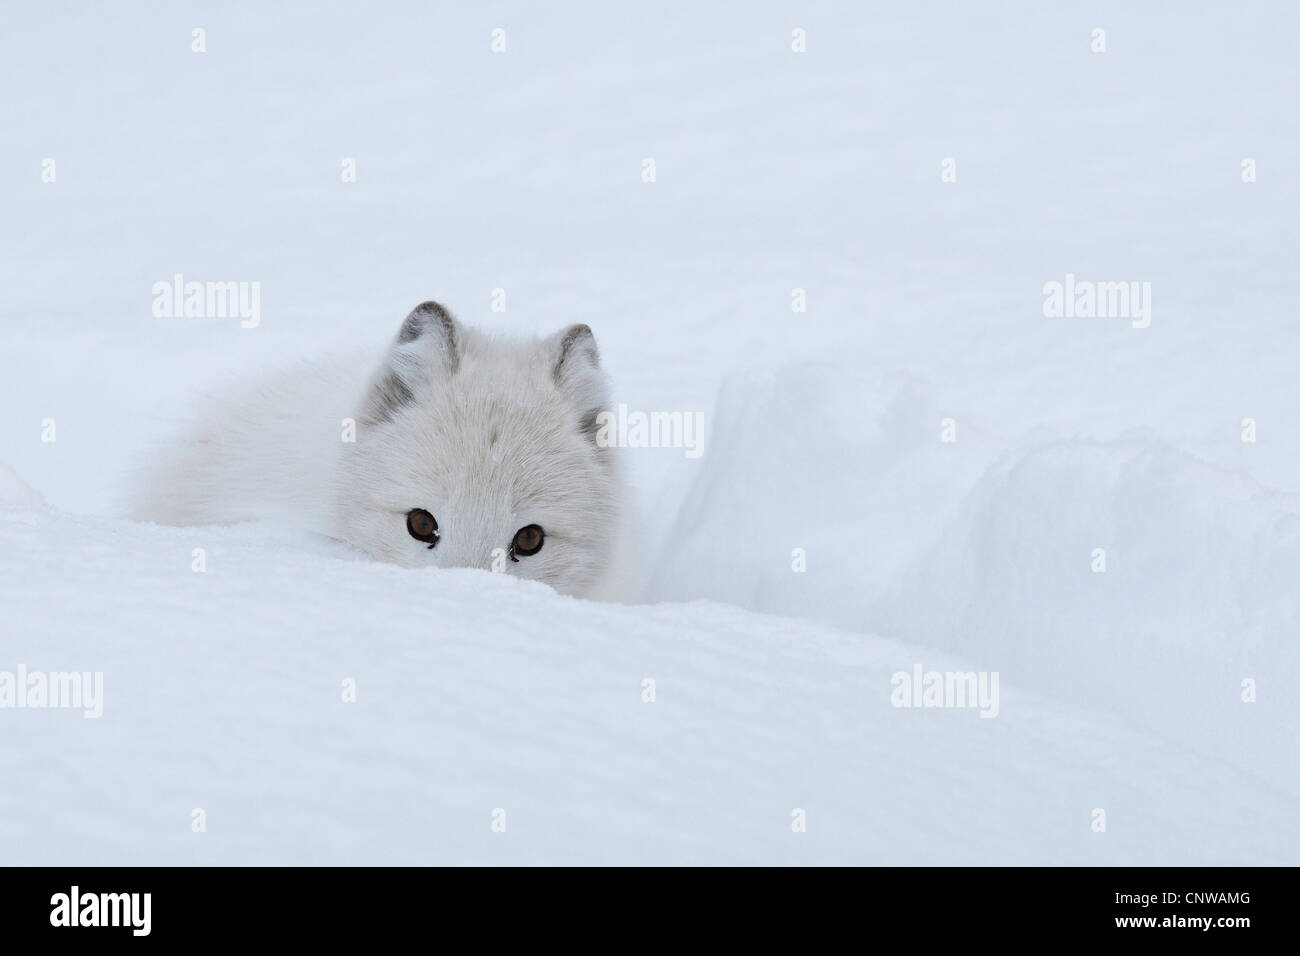 Le renard arctique, le renard polaire (Alopex lagopus, Vulpes lagopus), dans la neige, de la Norvège, de Namdal, Troendelag Banque D'Images